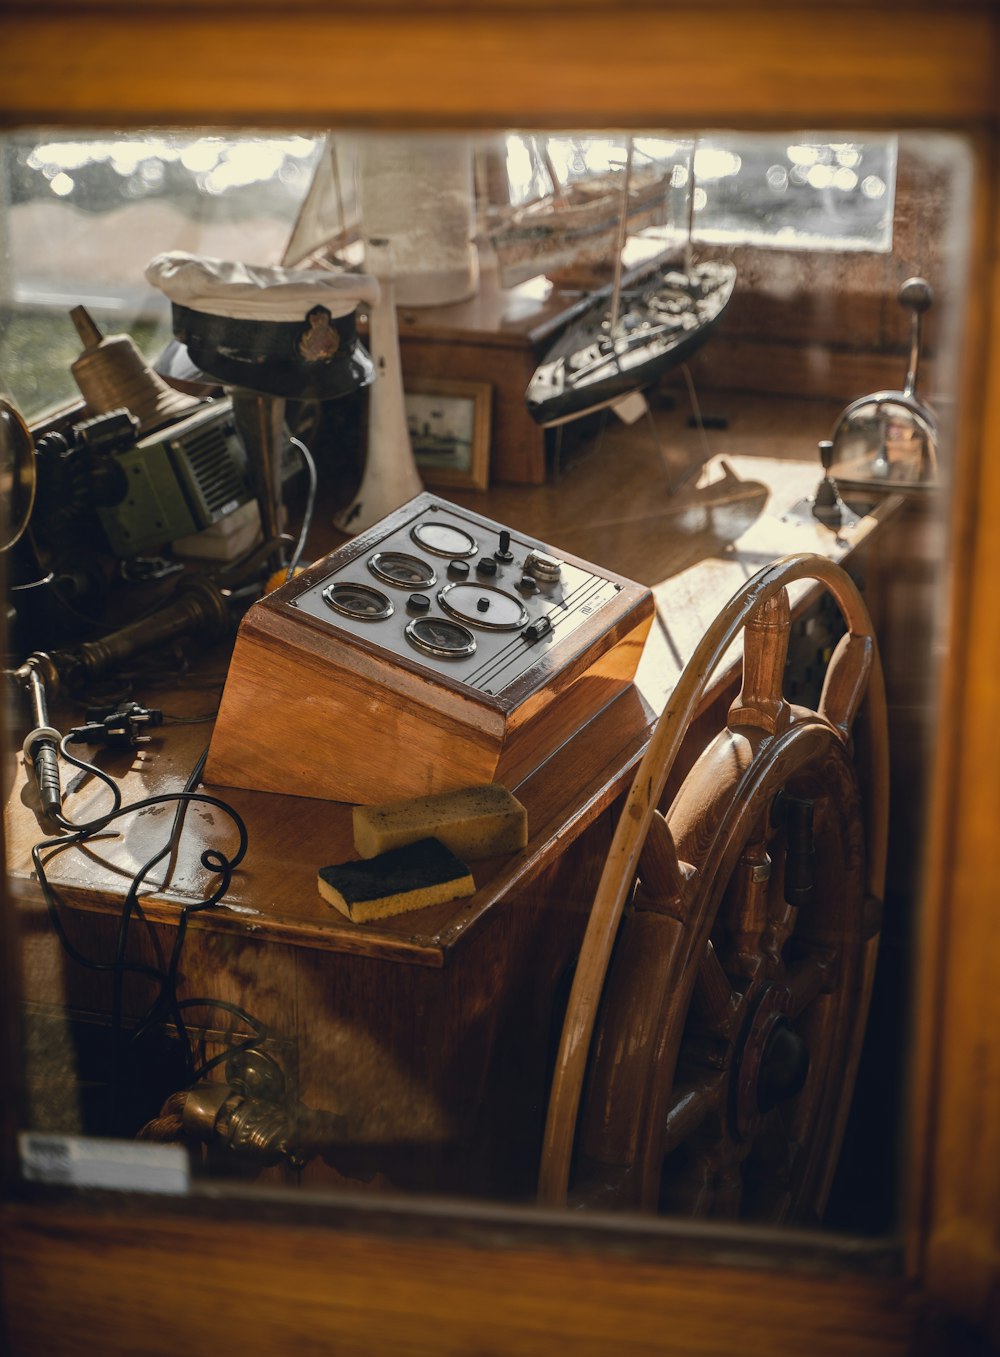 o volante de um barco e outros itens são vistos através de uma janela